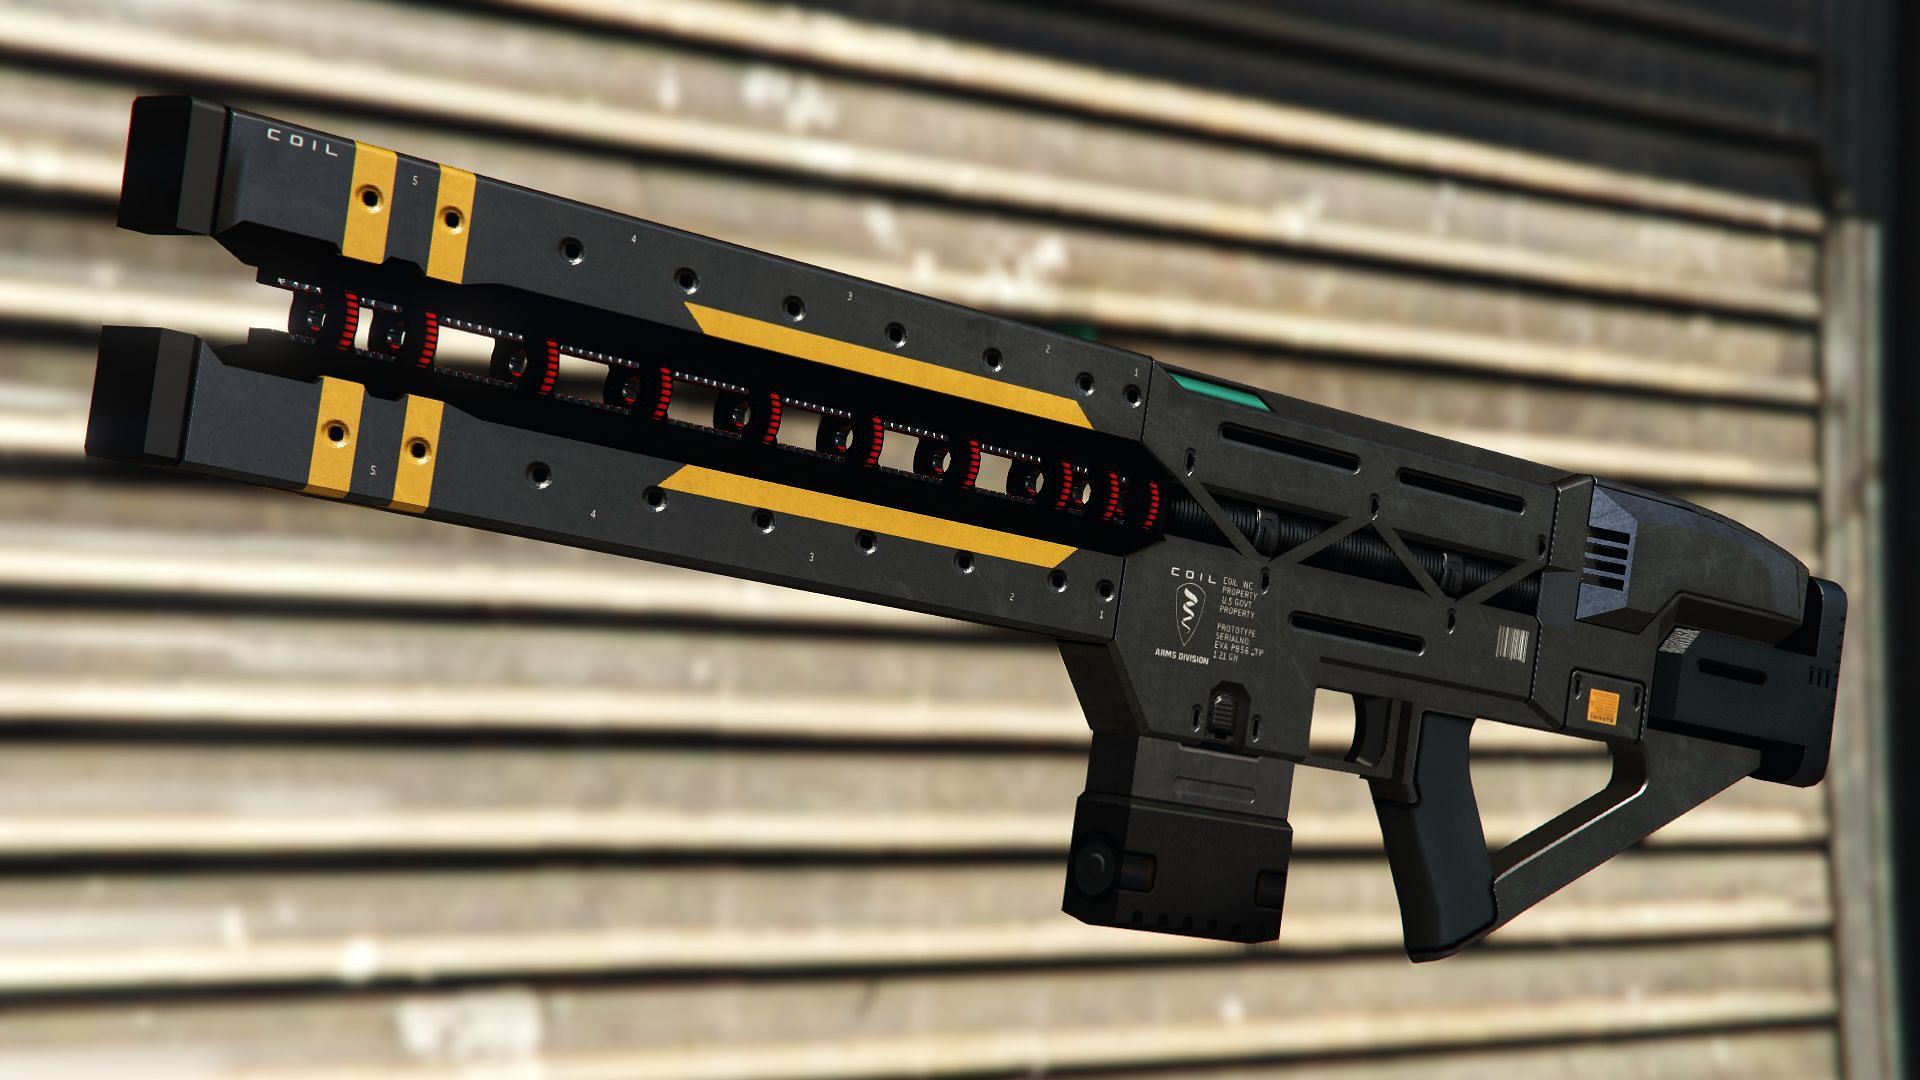 Another look at this gun (Image via Rockstar Games)